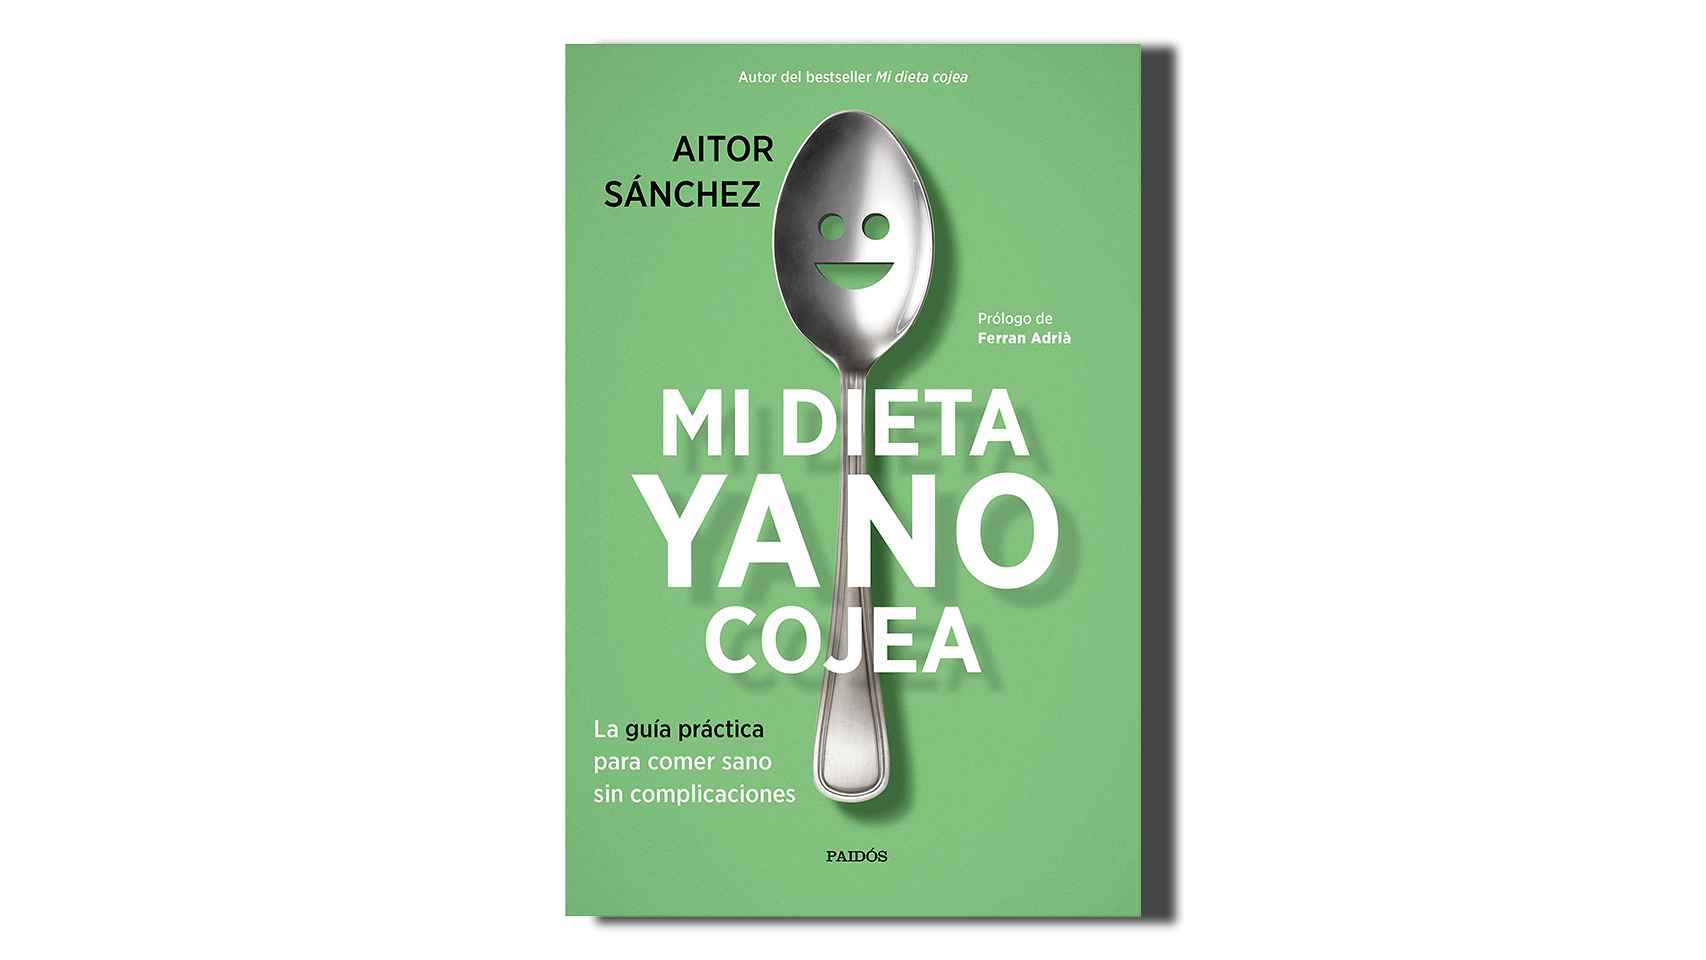 Su autor, Aitor Sánchez, es dietista-nutricionista y divulgador en nutrición.